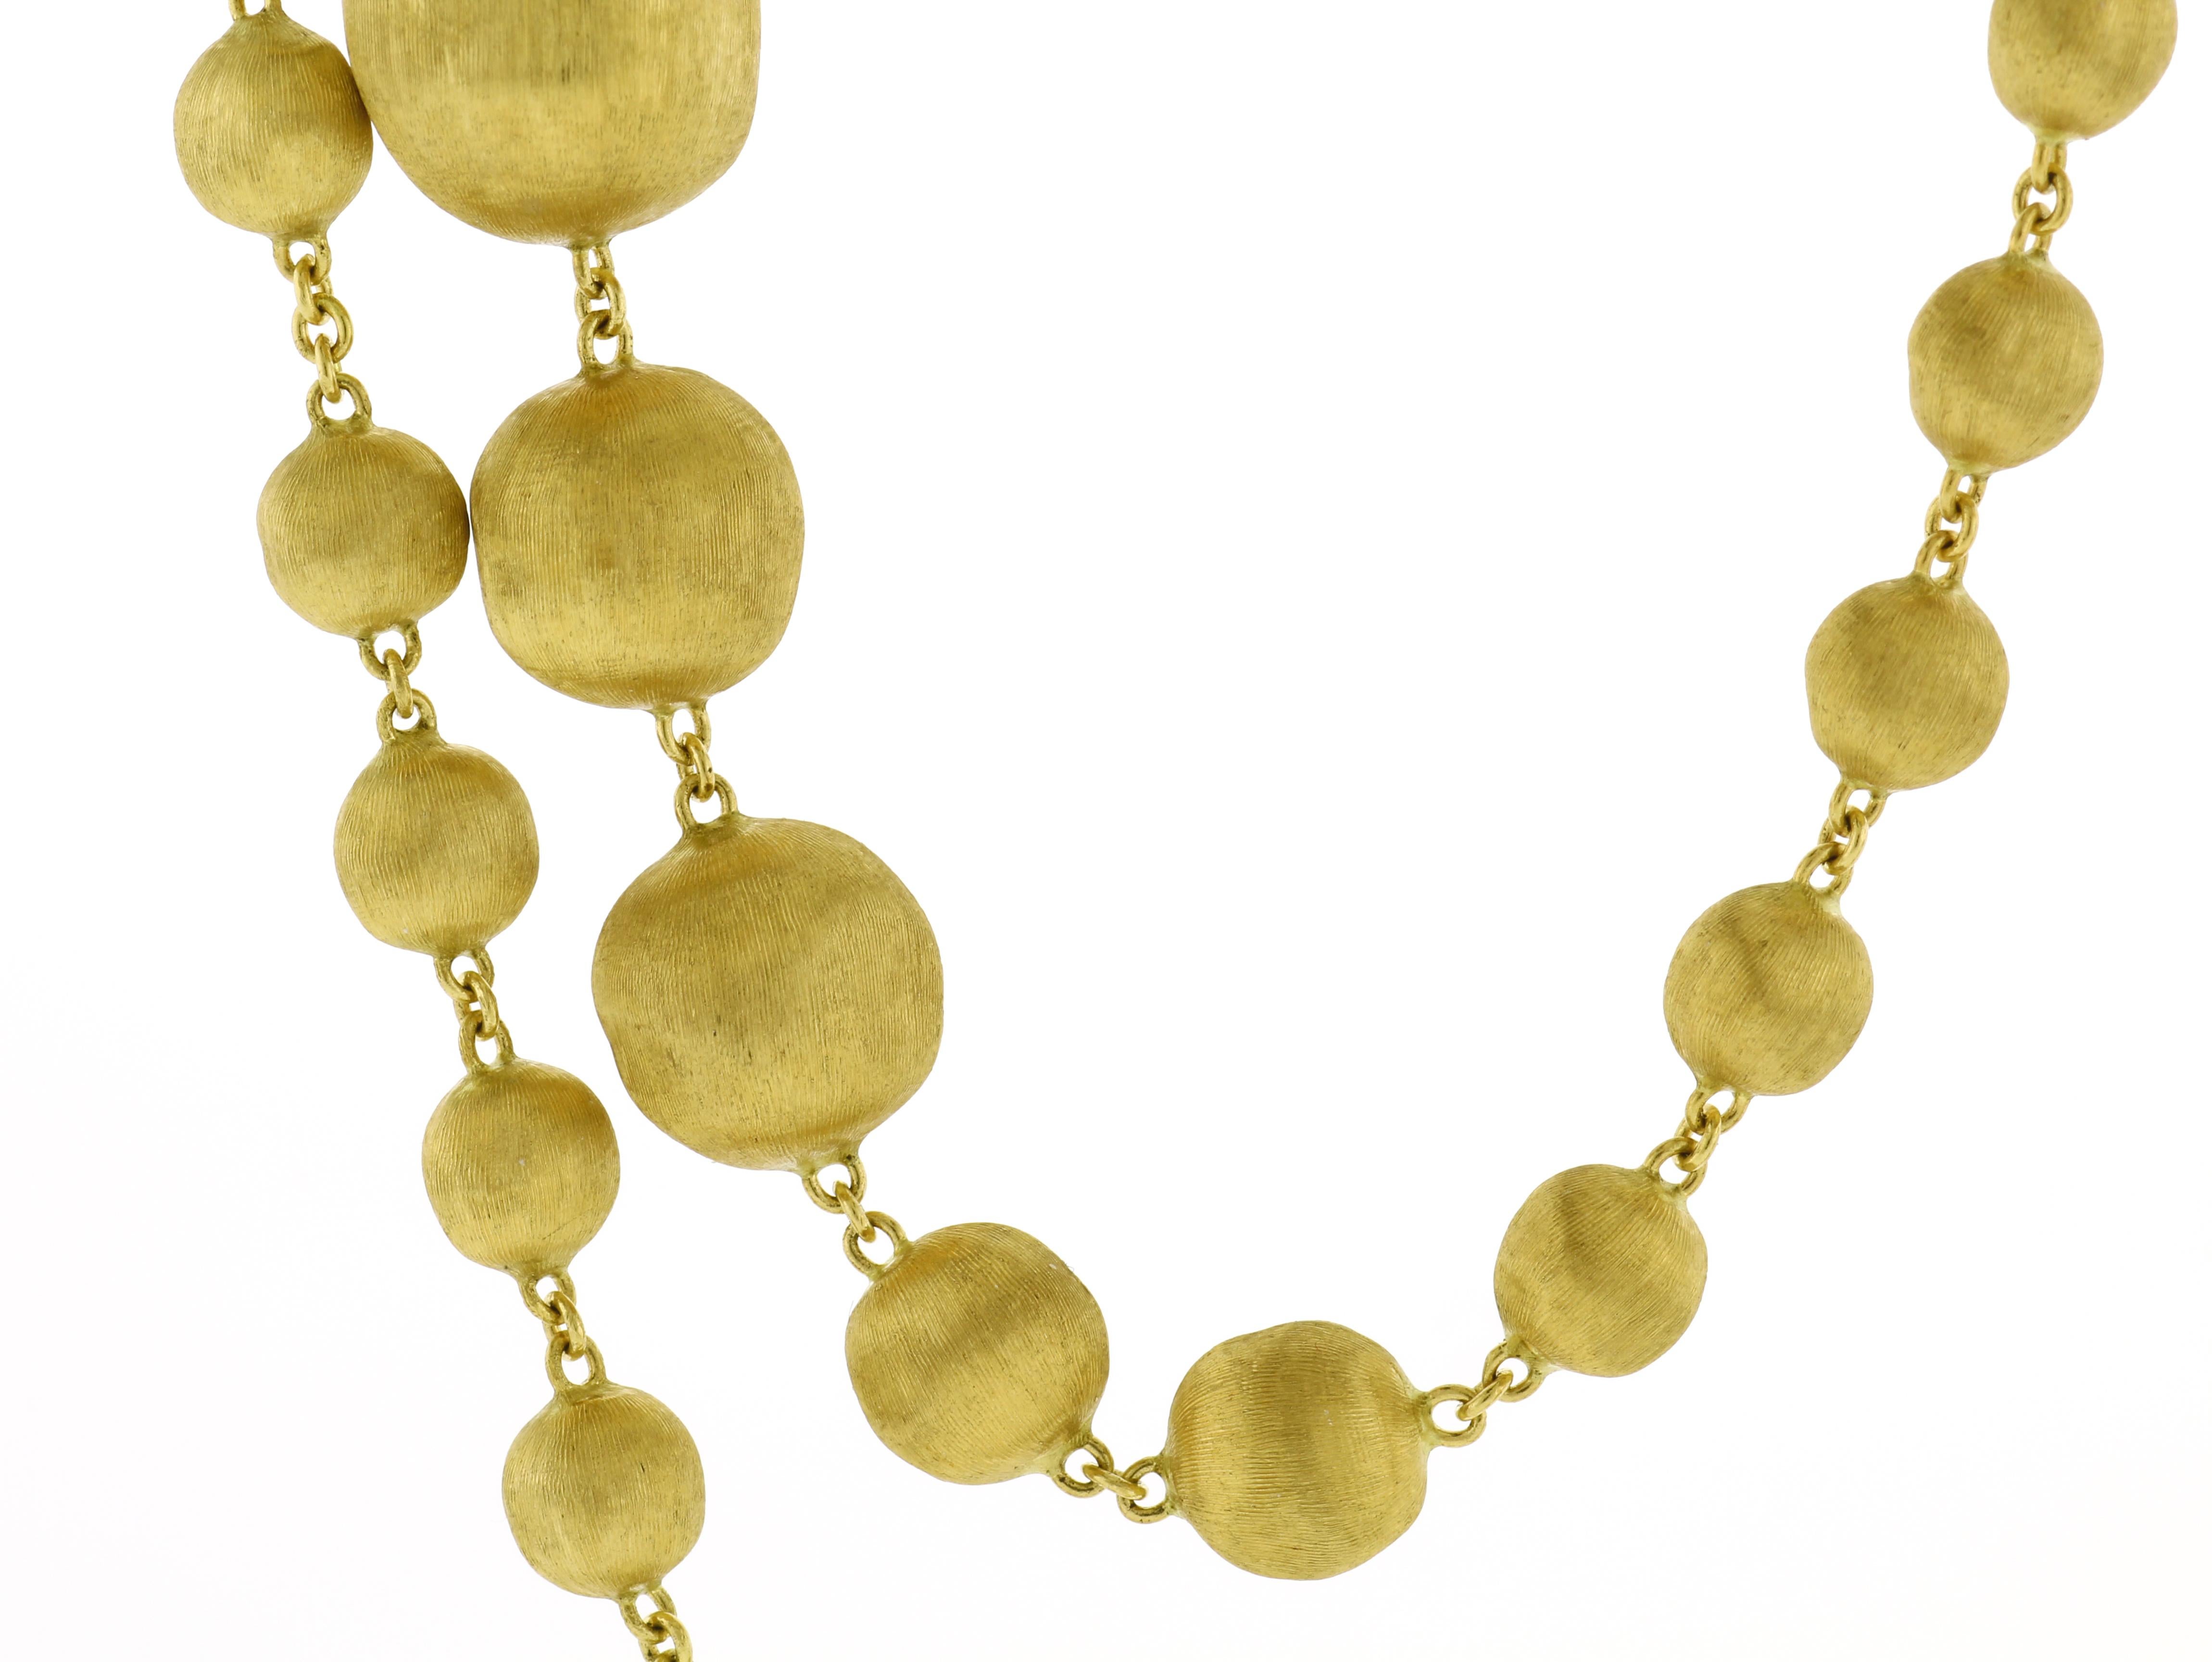 Découvrez l'allure captivante du collier de perles africaines de Marco Bicego, une parure étonnante d'une longueur de 36 pouces. Chaque perle témoigne de l'engagement de Marco Bicego en faveur d'un savoir-faire exquis et d'une élégance intemporelle,